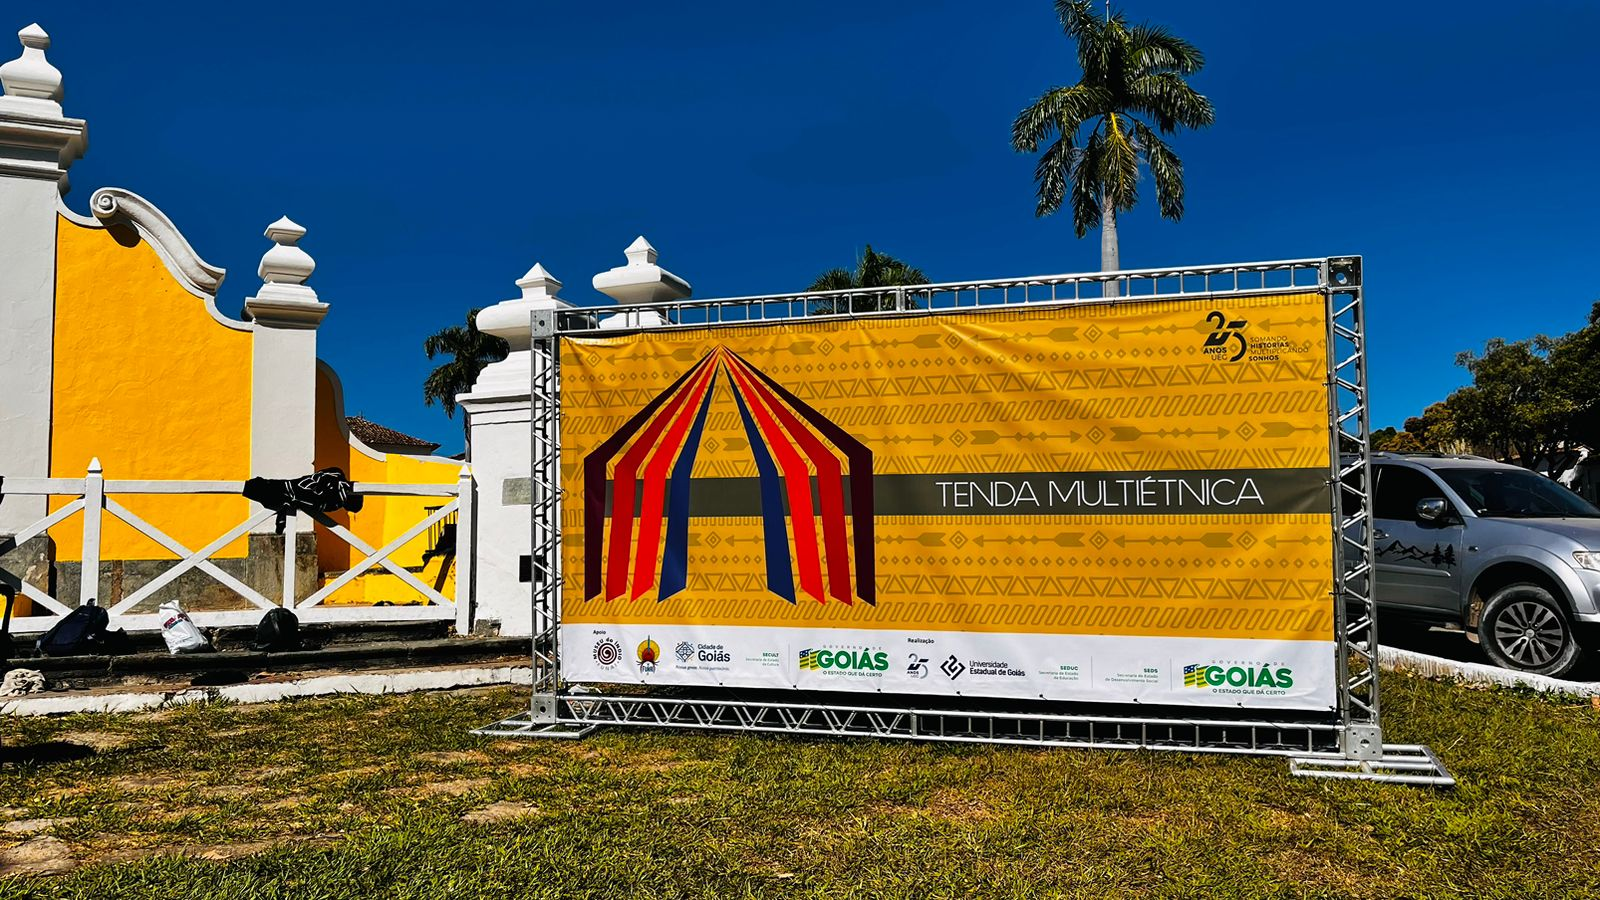 Governo de Goiás promove atividades em tenda multiétnica no Fica